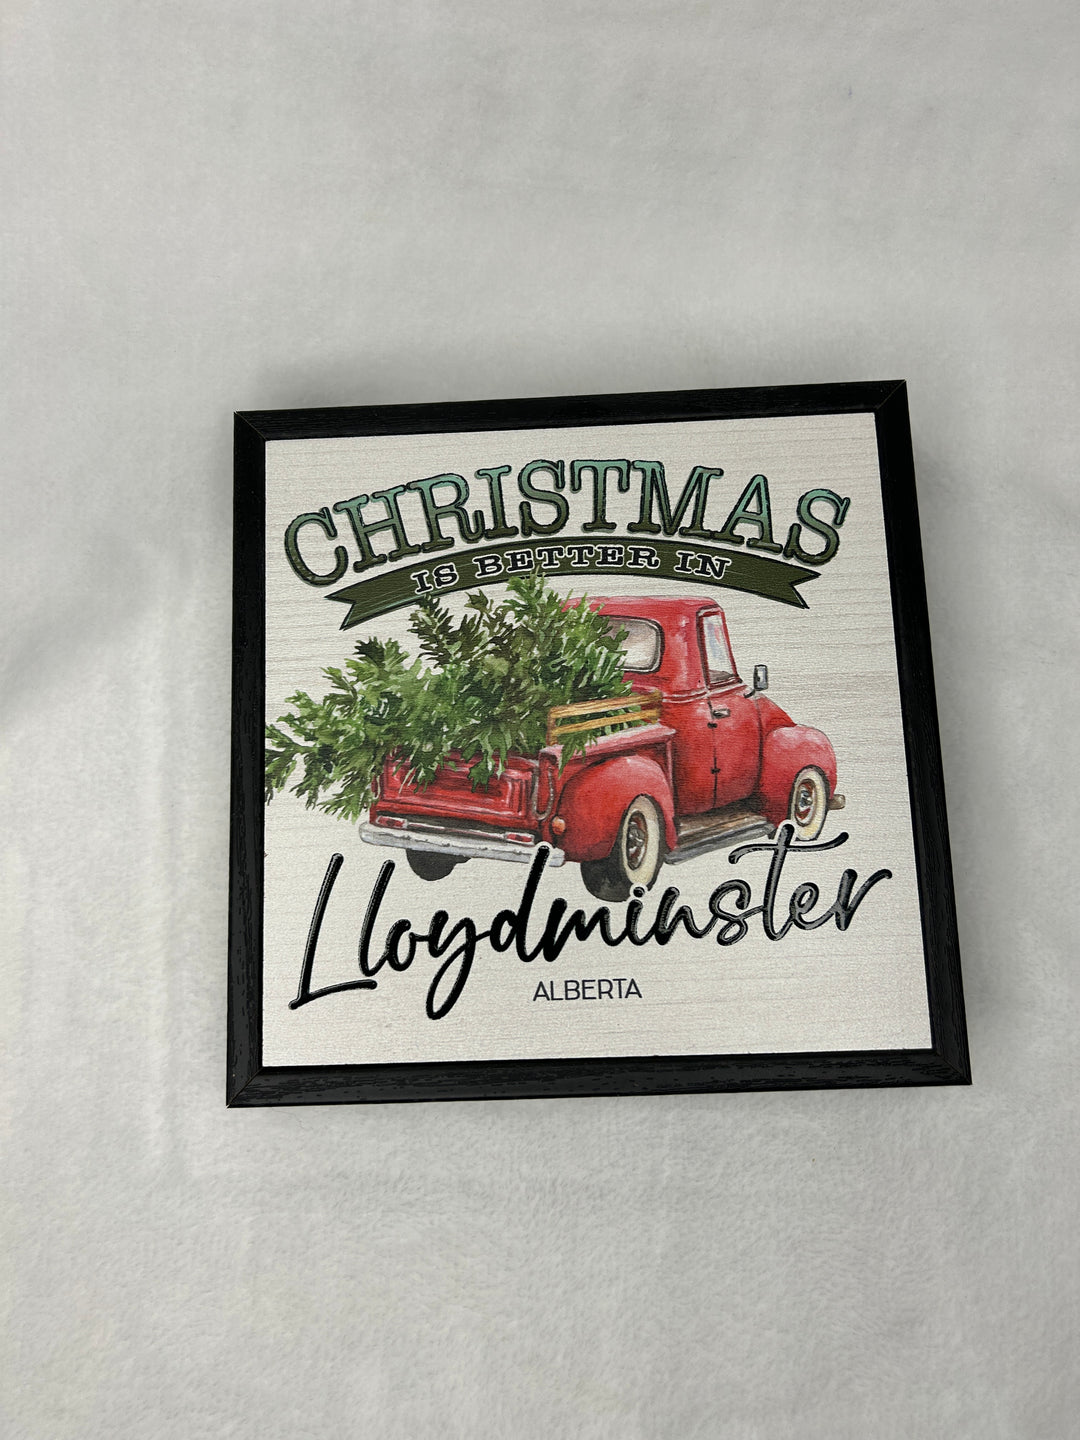 Christmas Is Better (Lloydminster) Sign